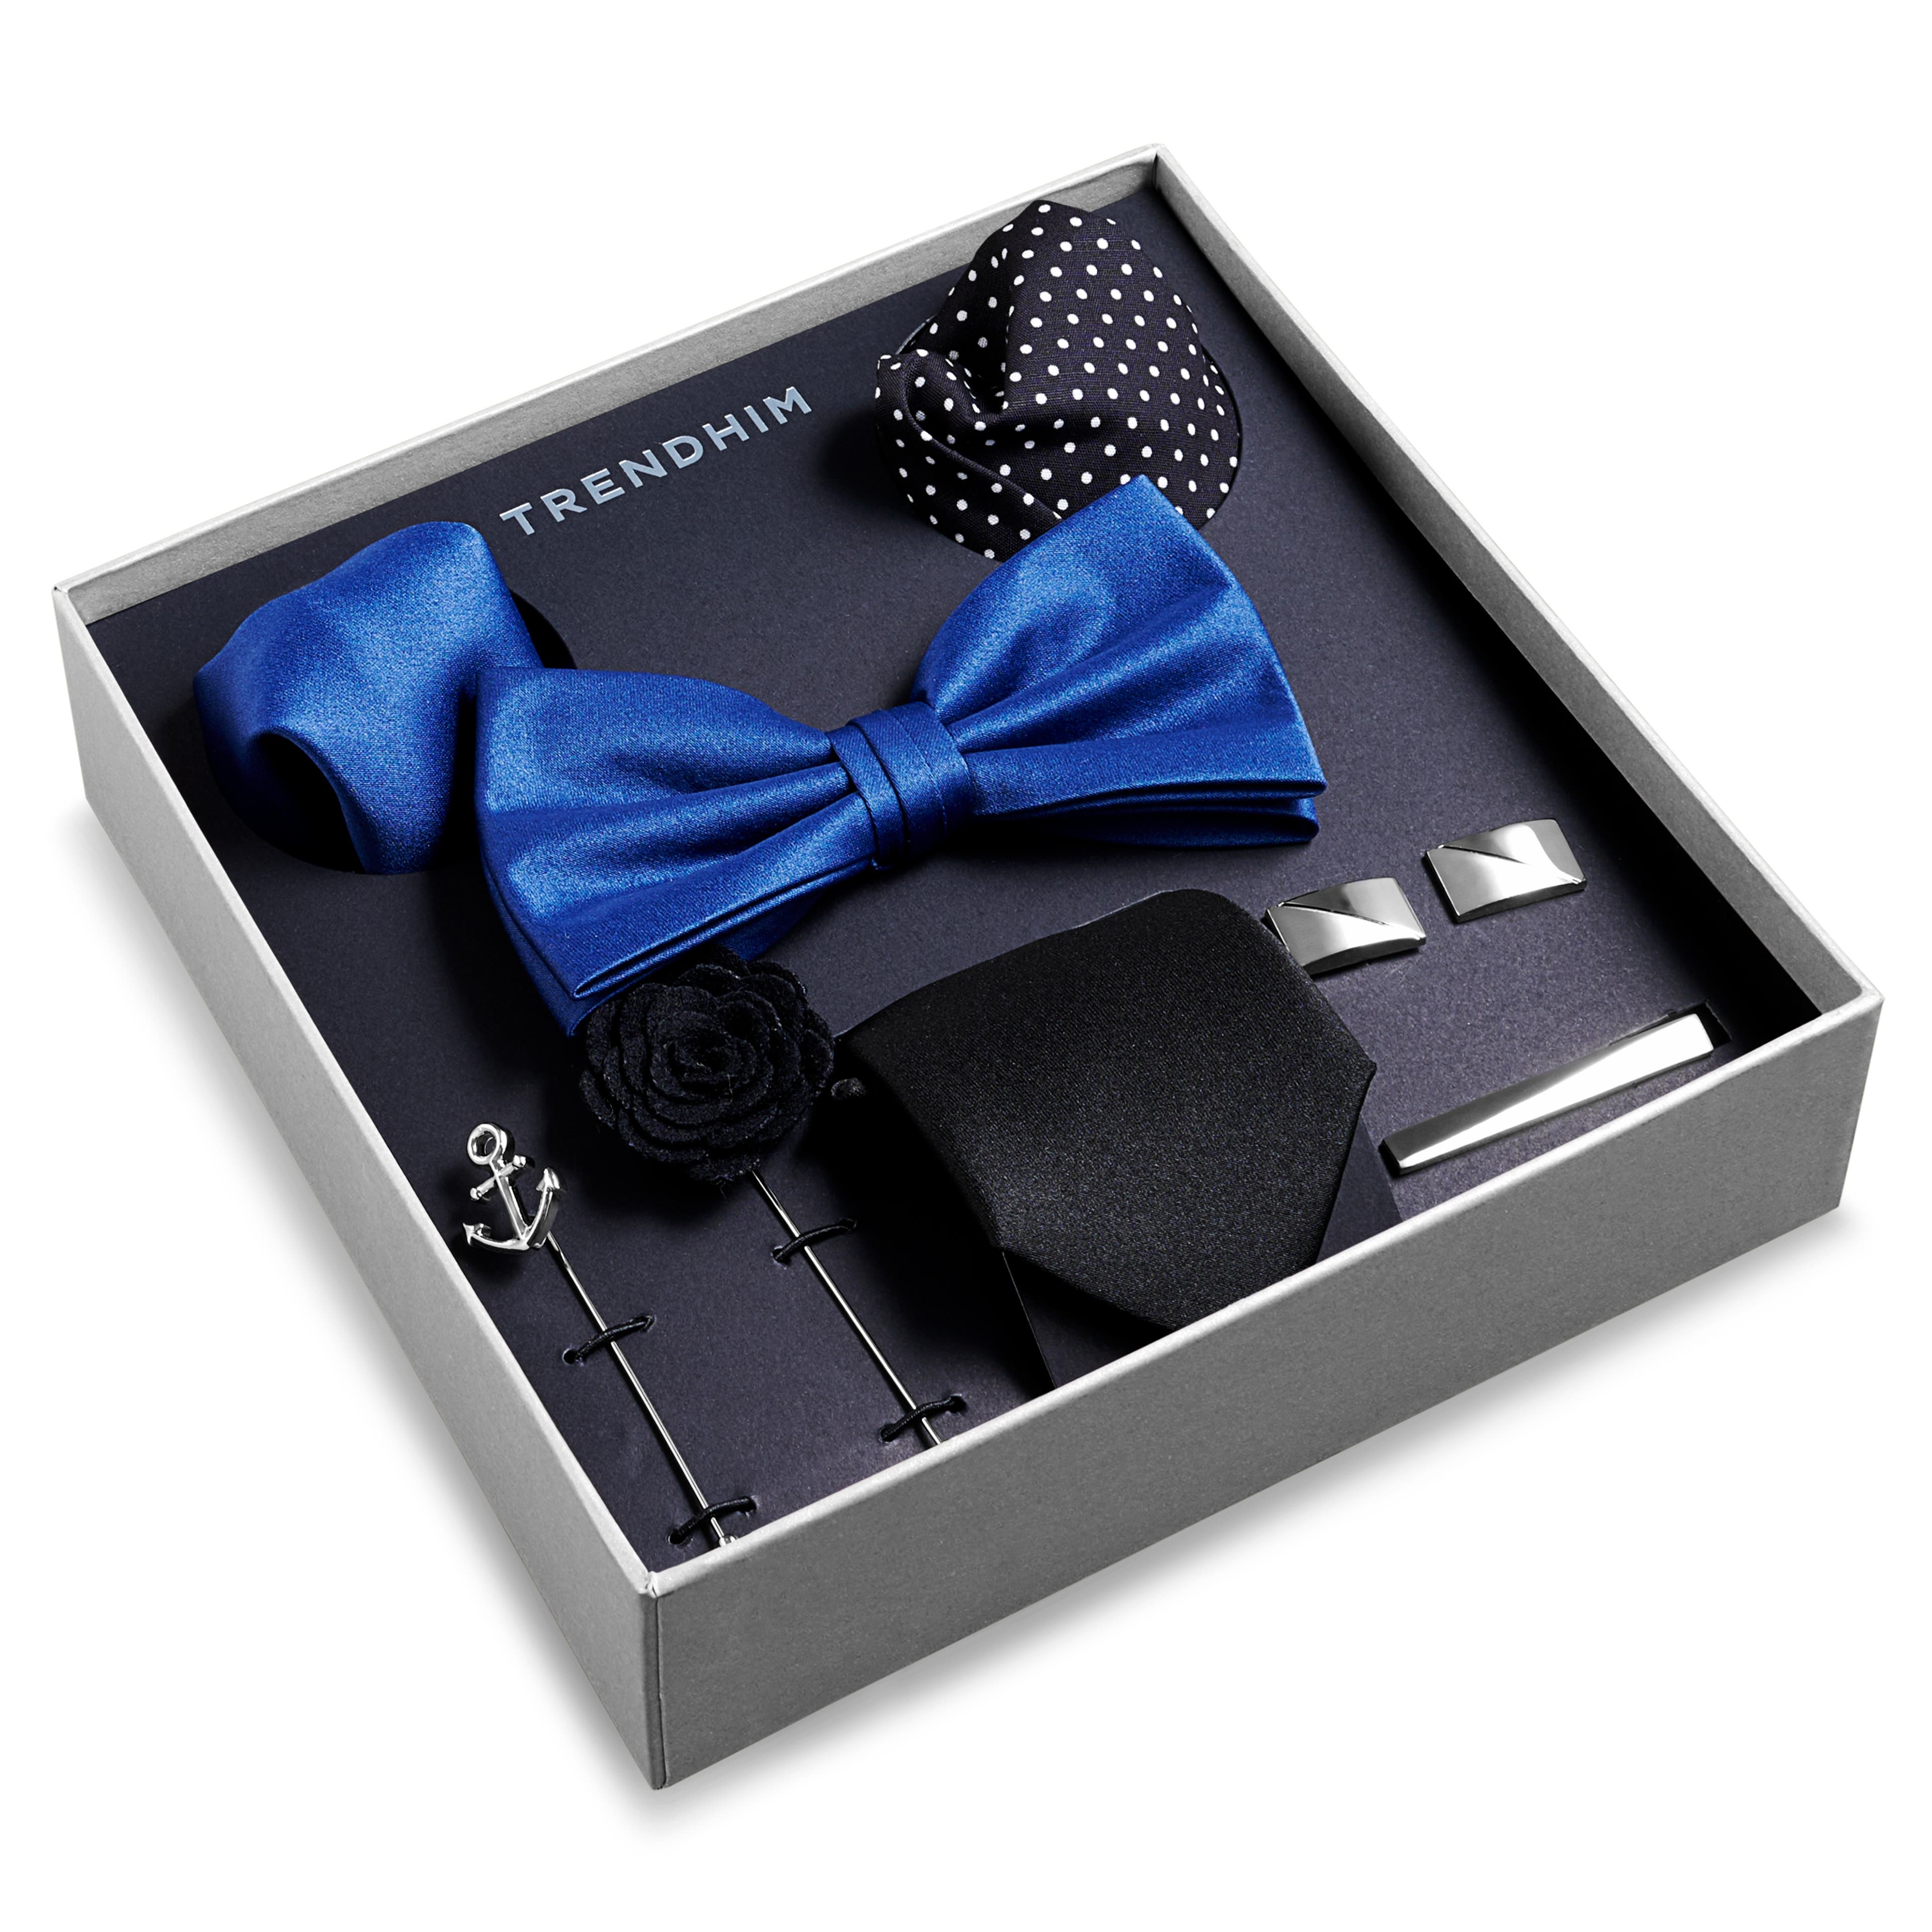 Presentpaket med Kostymaccessoarer | Marinblått, Svart & Silverfärgat Paket